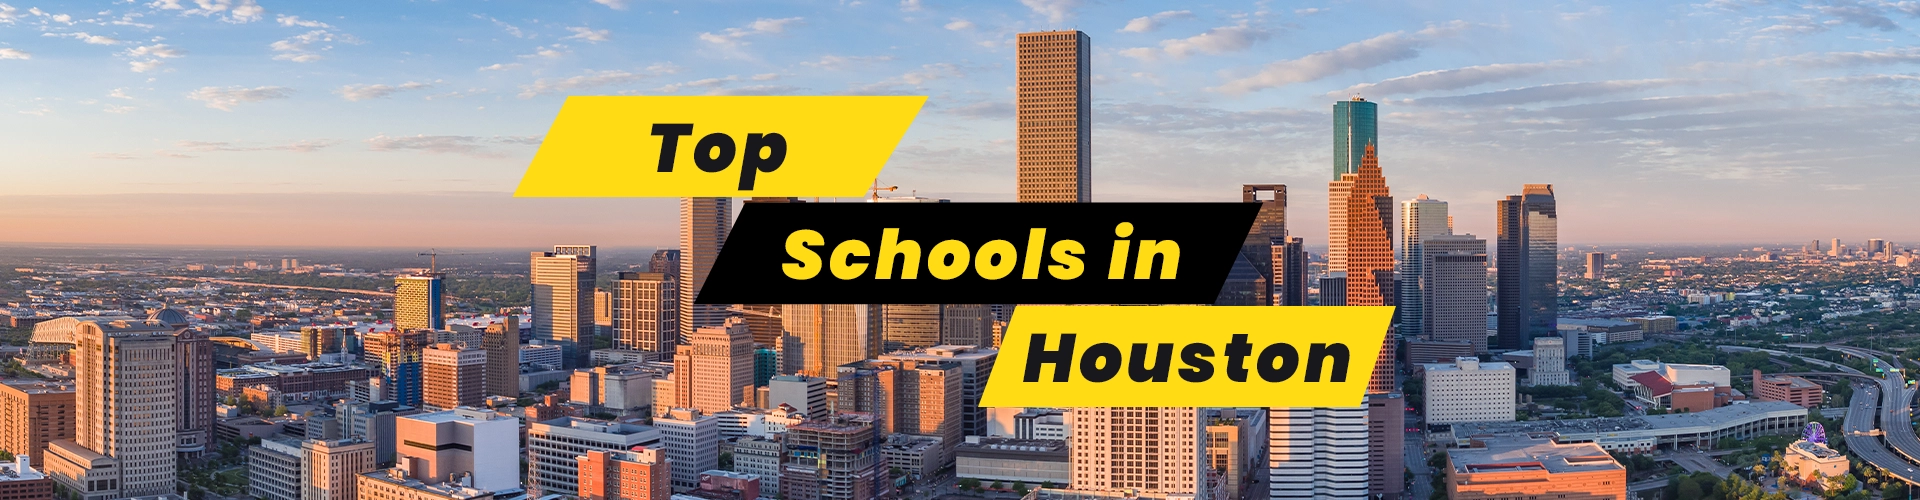 Top Schools in Houston